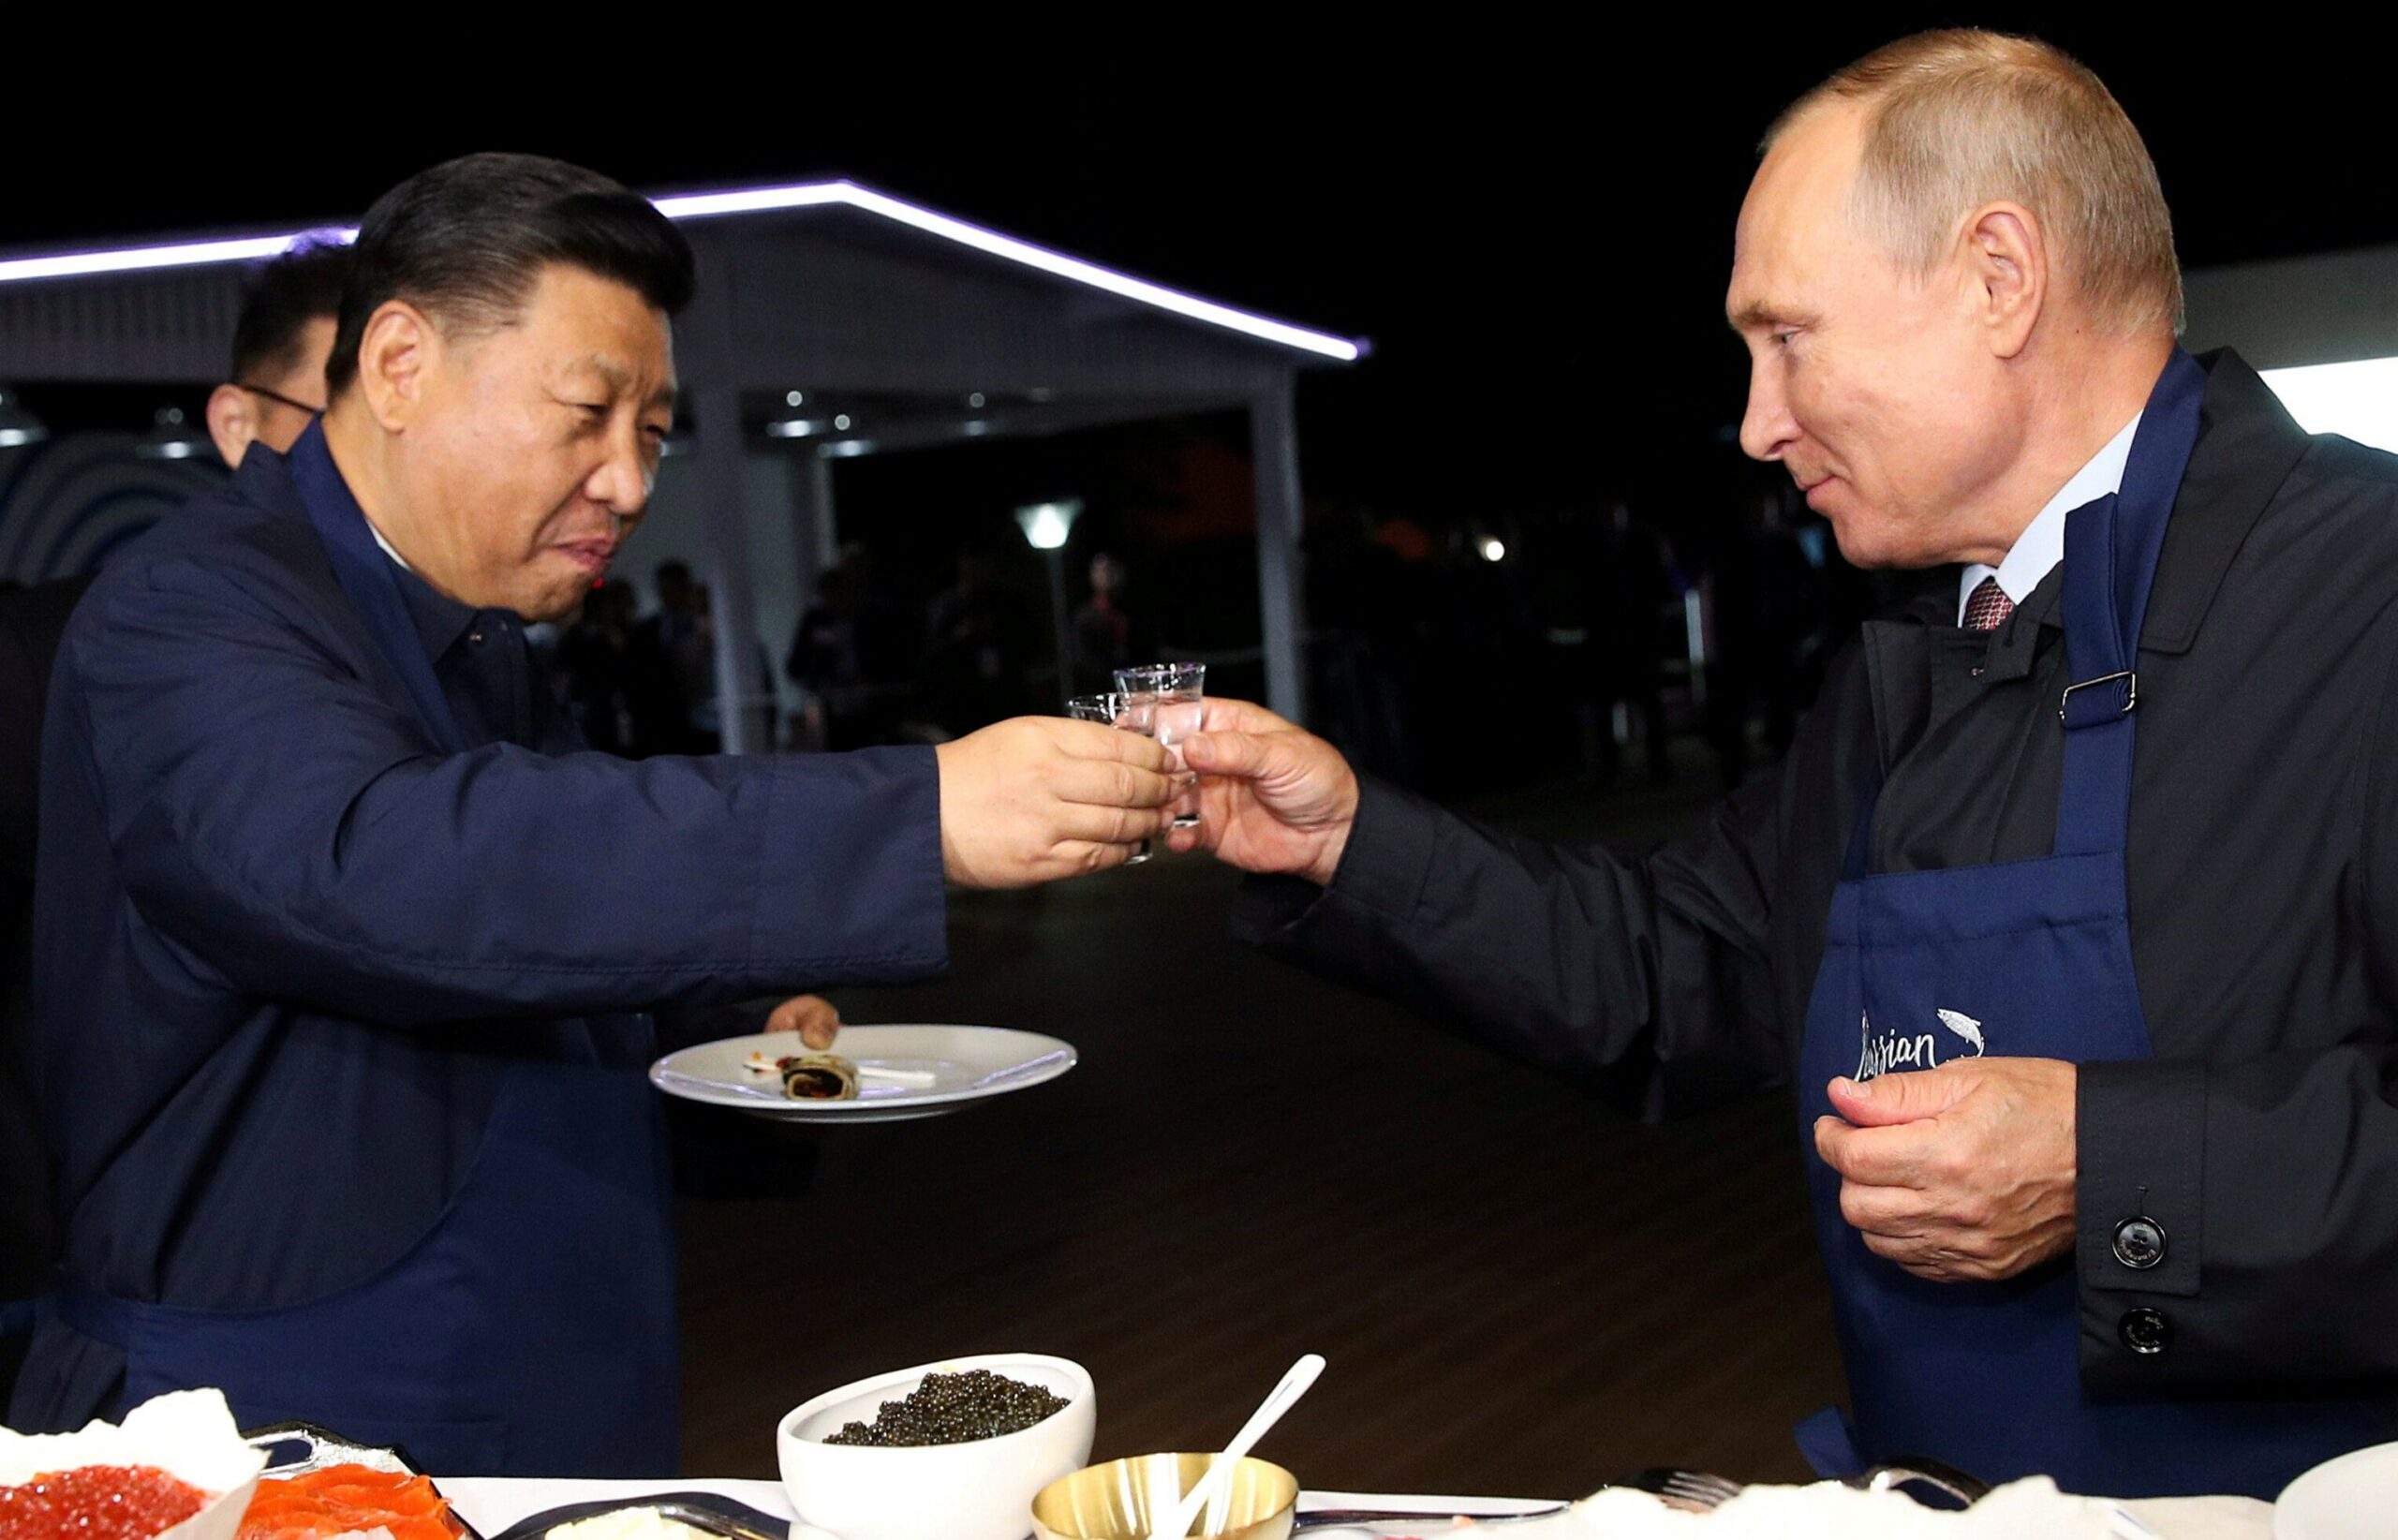 «Они стали слишком близки»: Госдеп заявил, что США обеспокоены активным развитием отношений между Россией и Китаем